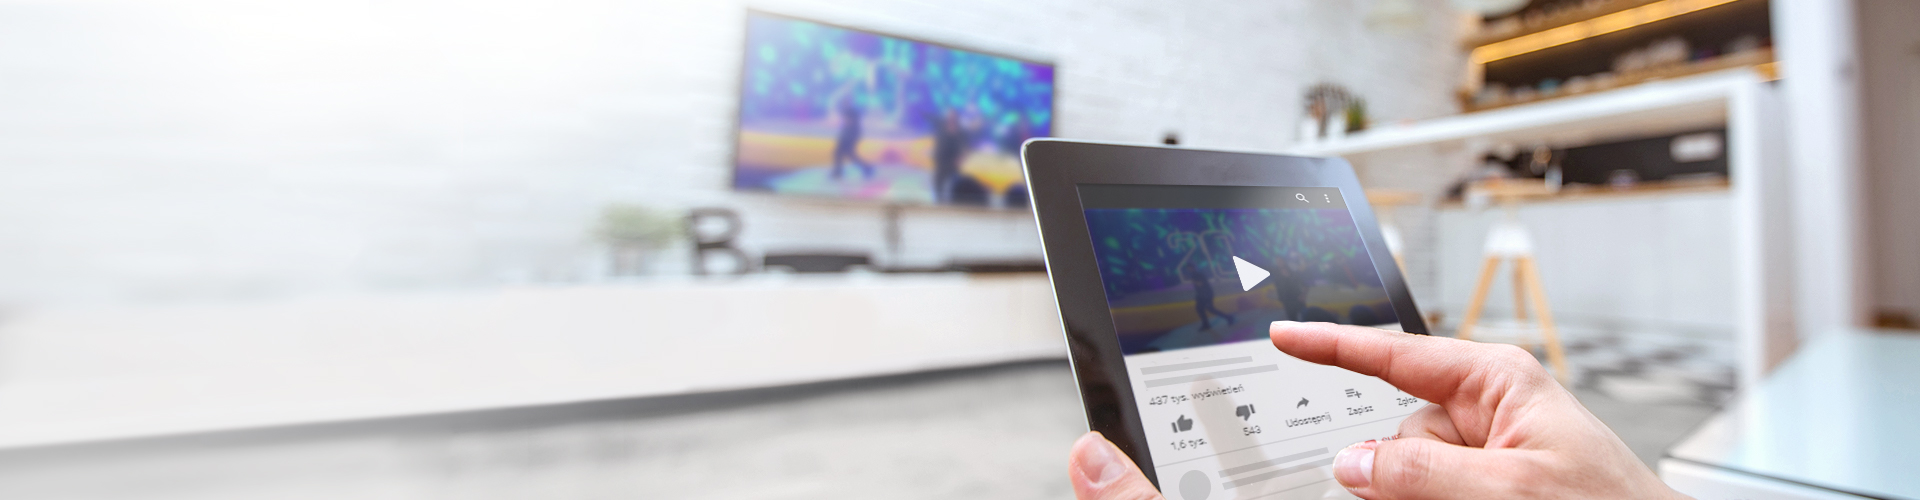 Dłoń trzymająca tablet na tle telewizora